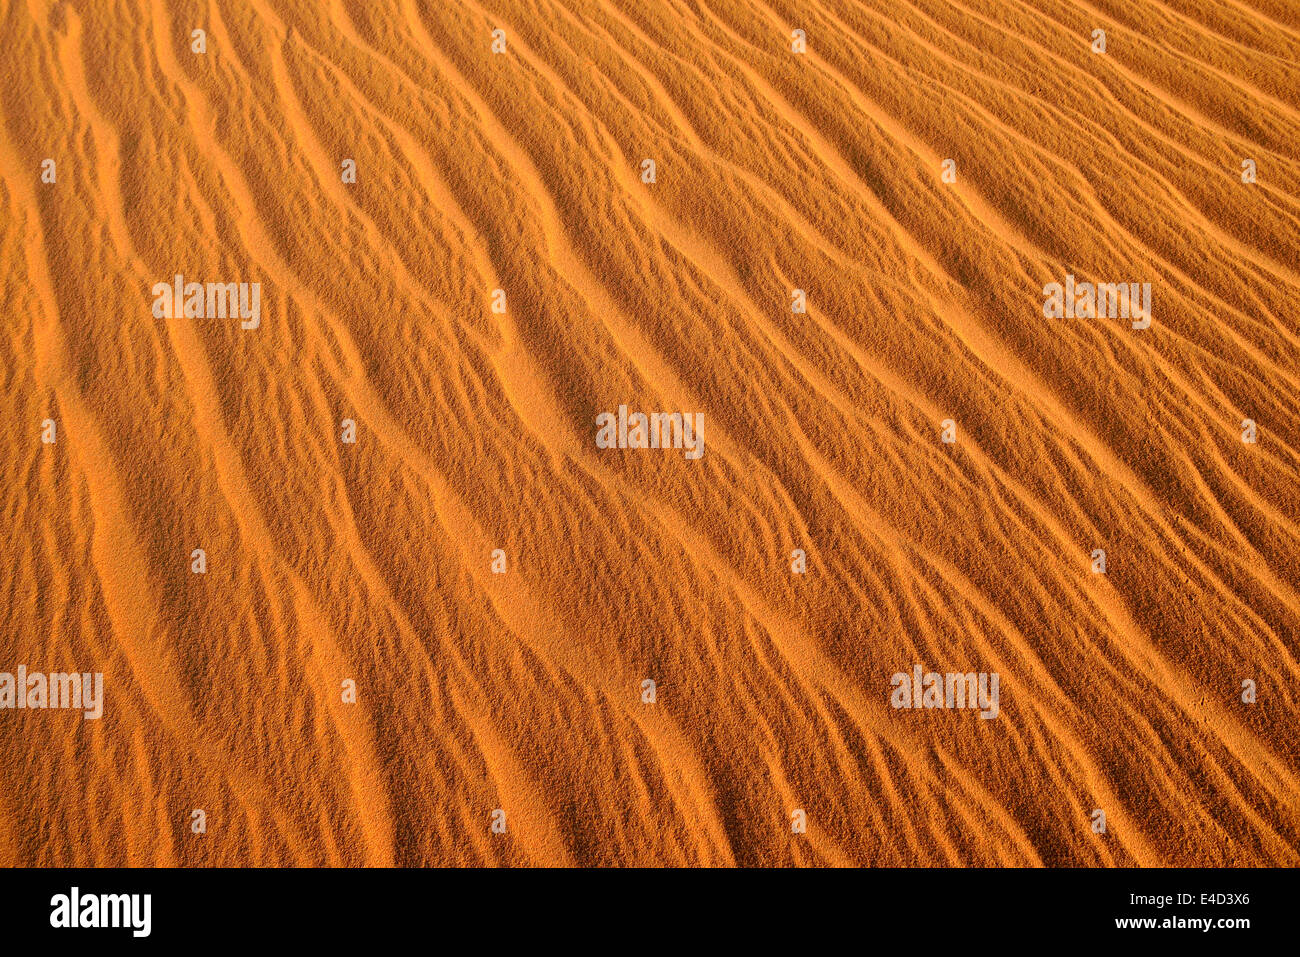 Rides de sable, la texture sur une dune de sable, le Tassili n'Ajjer, Sahara, Algérie Banque D'Images